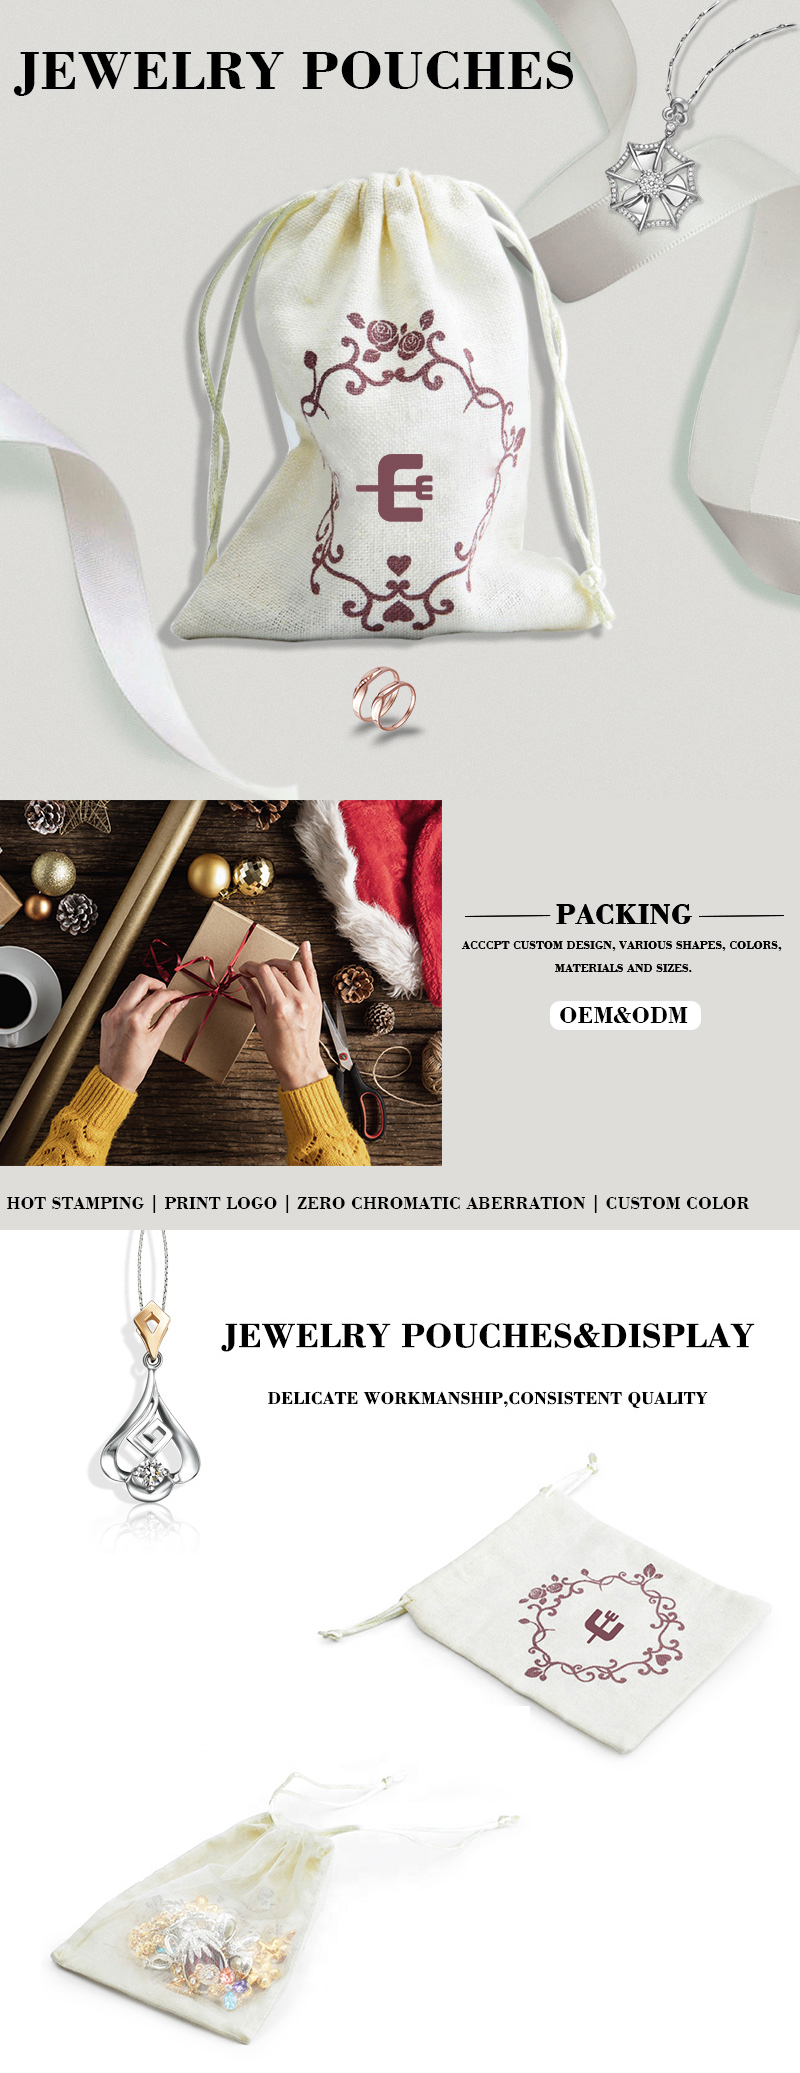 Jewelry pouch